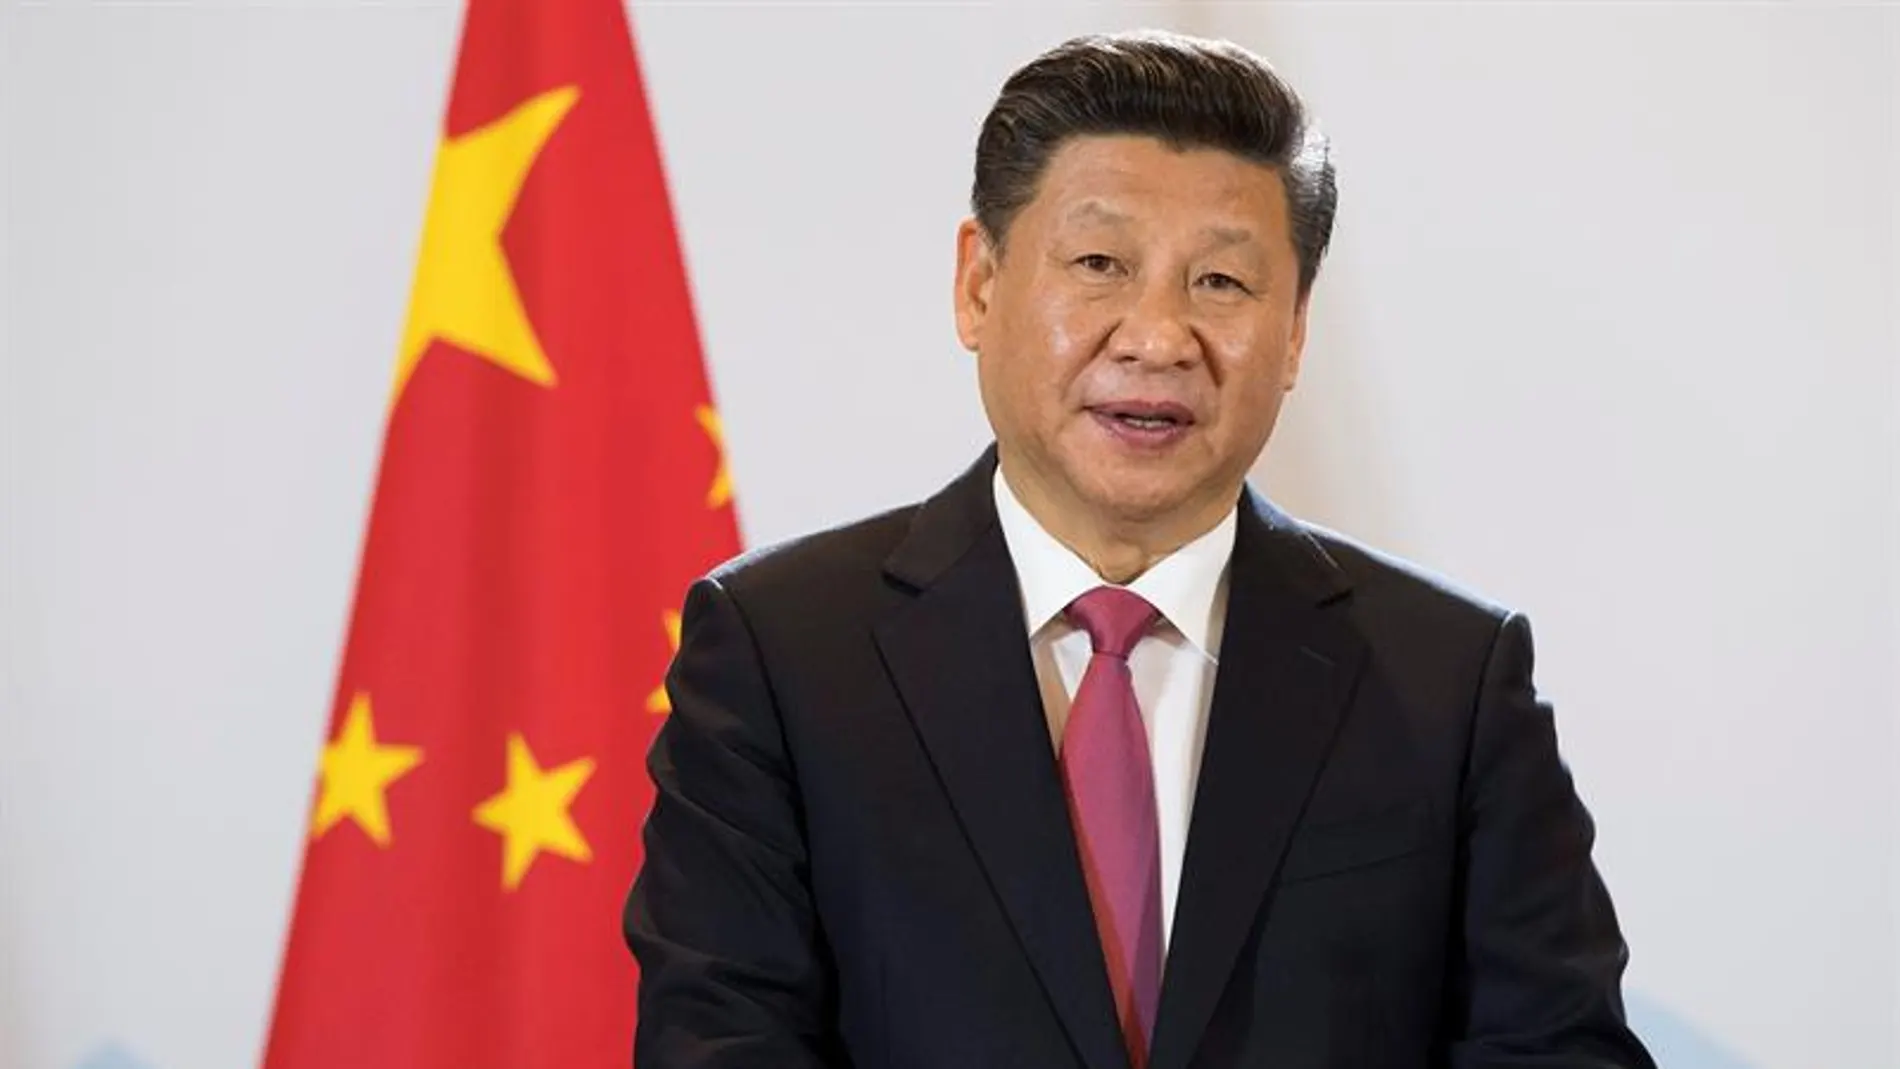 El presidente chino, Xi Jinping, durante una rueda de prensa